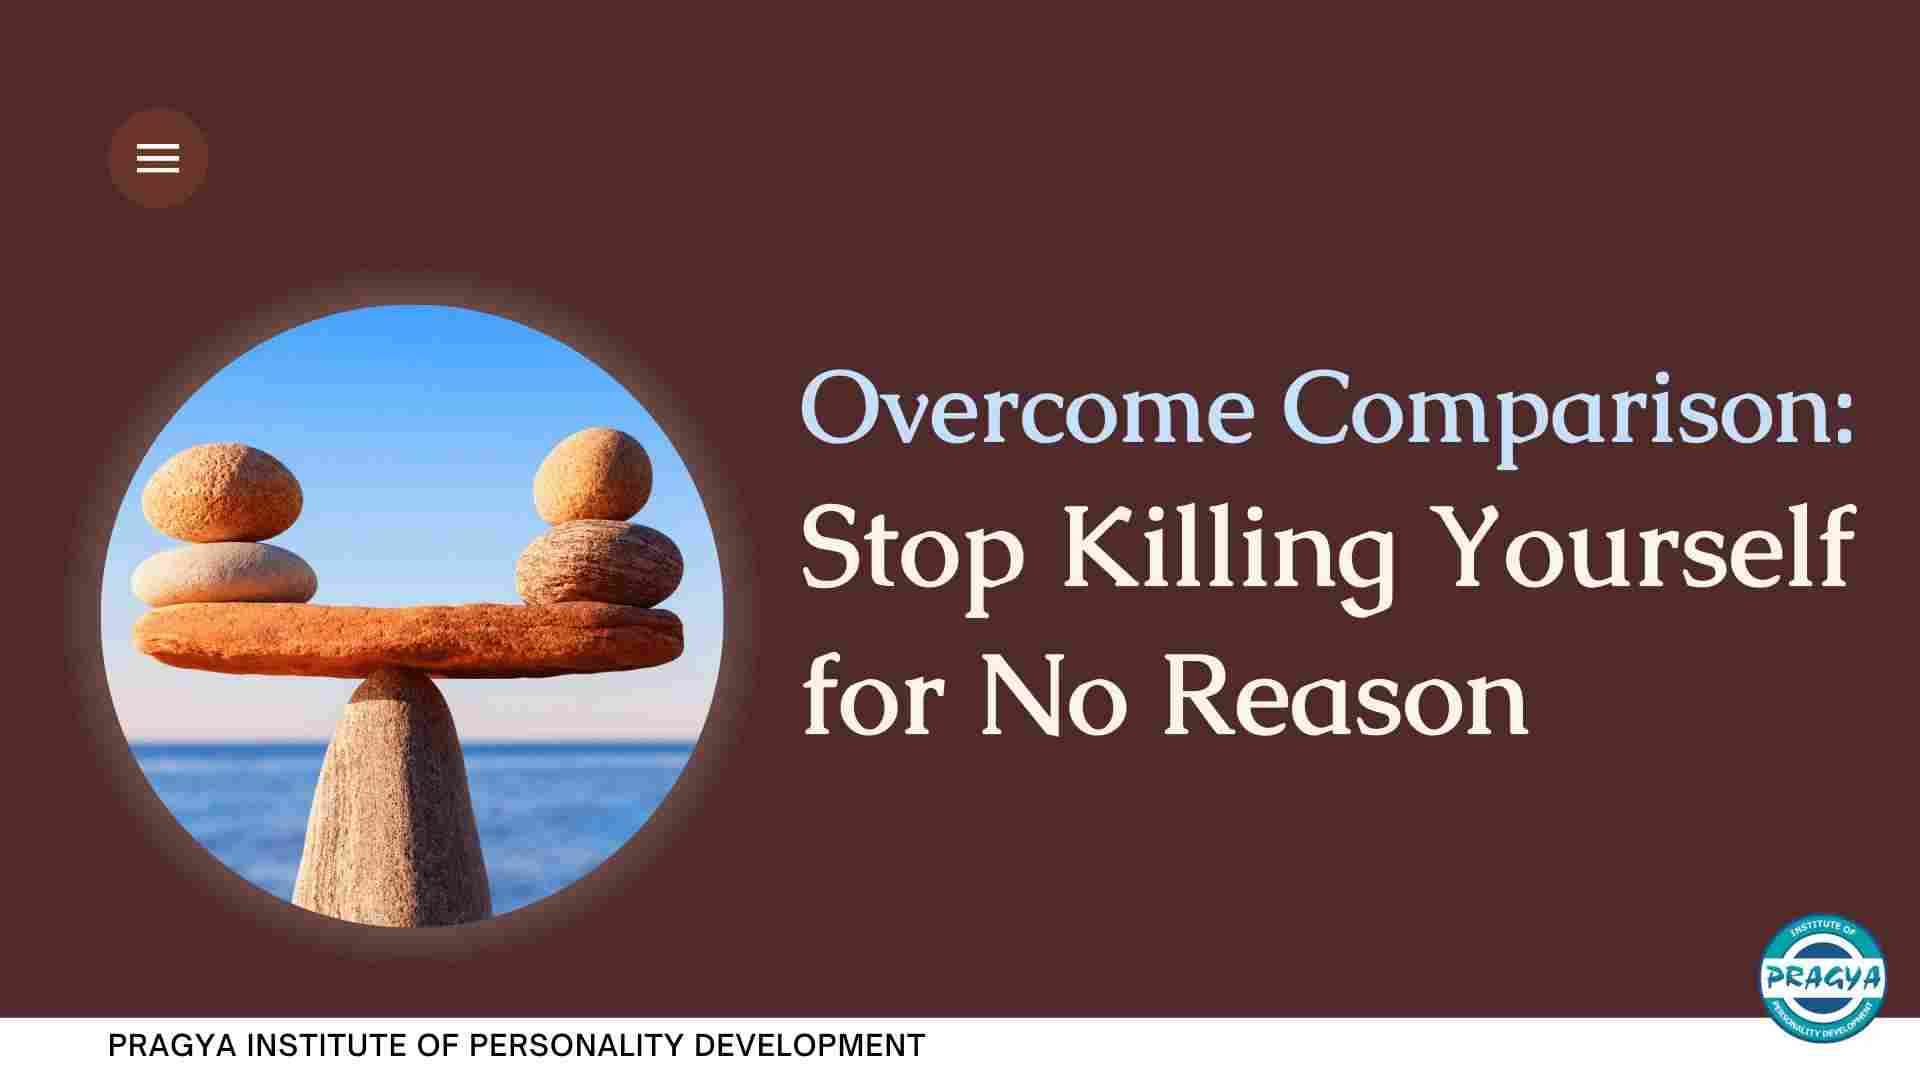 Overcome Comparison: Stop Killing Yourself for No Reason